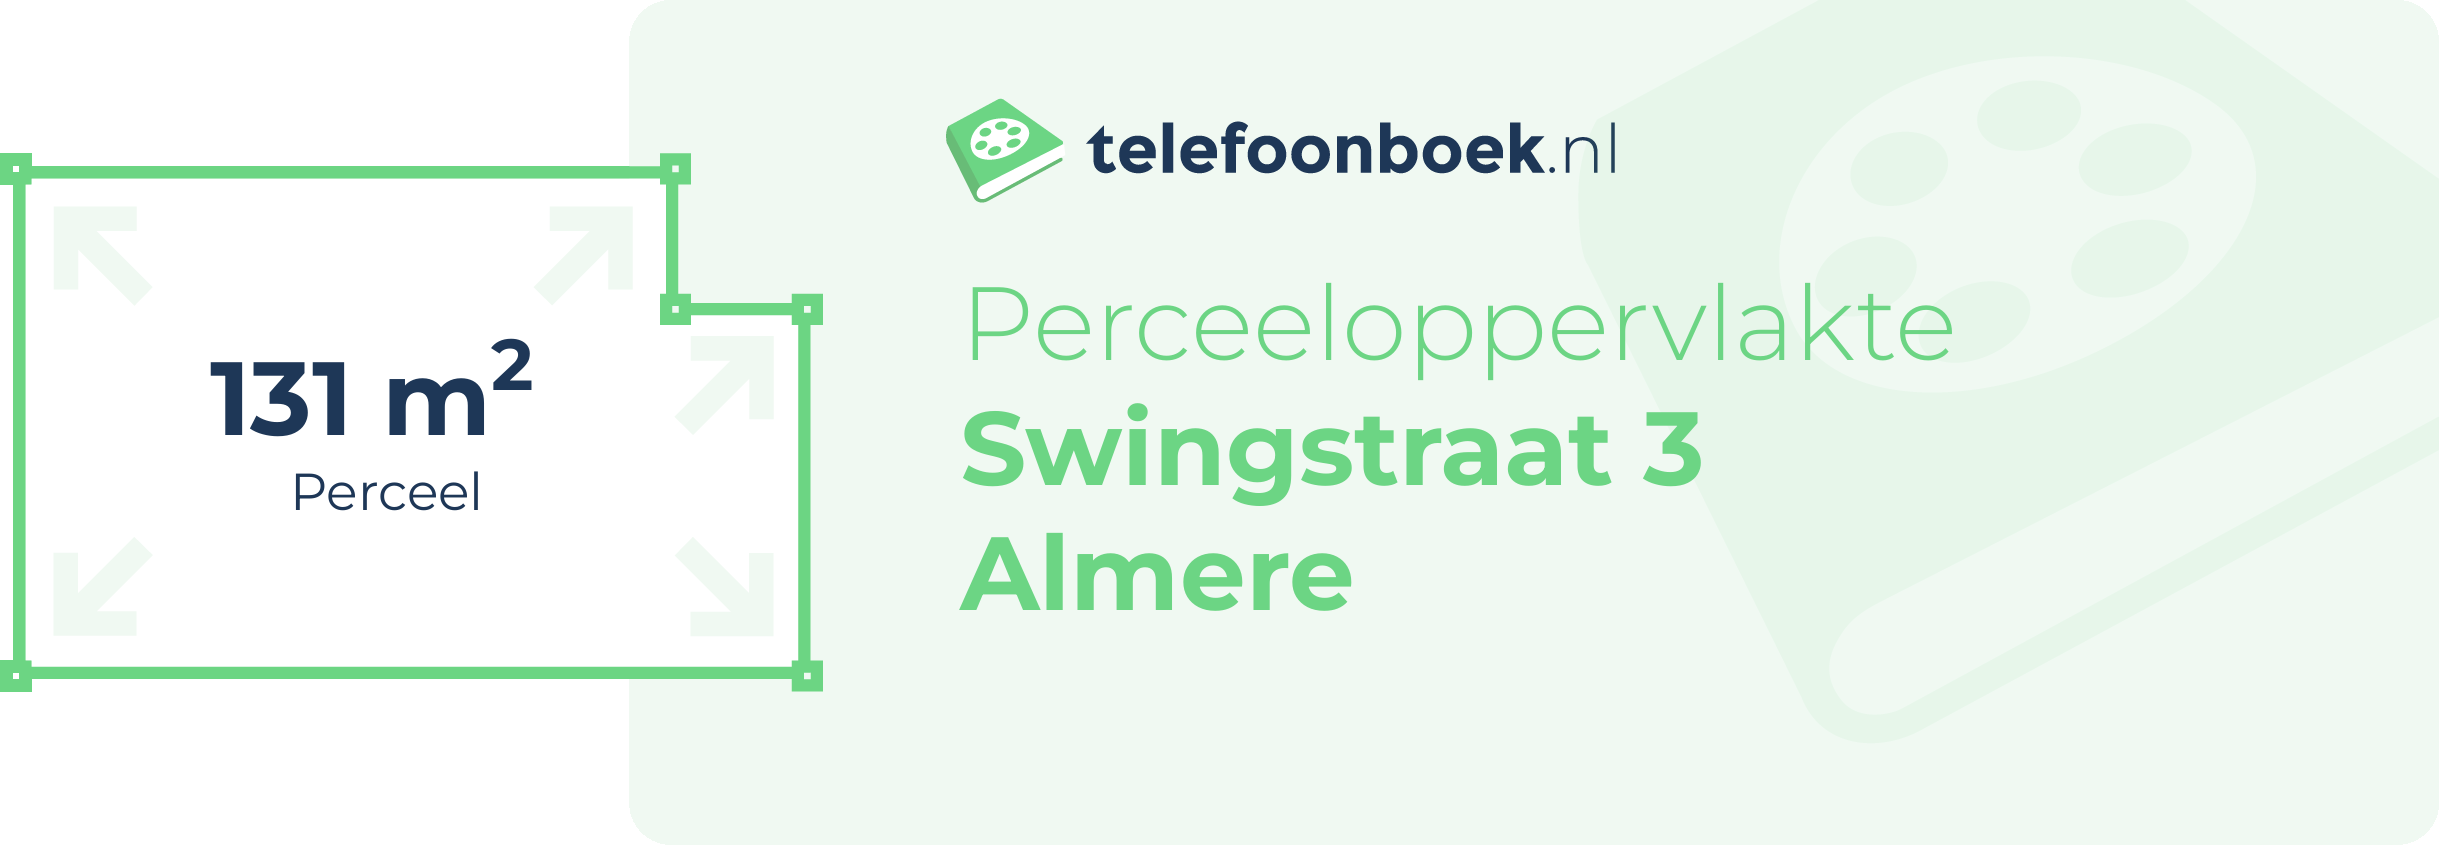 Perceeloppervlakte Swingstraat 3 Almere